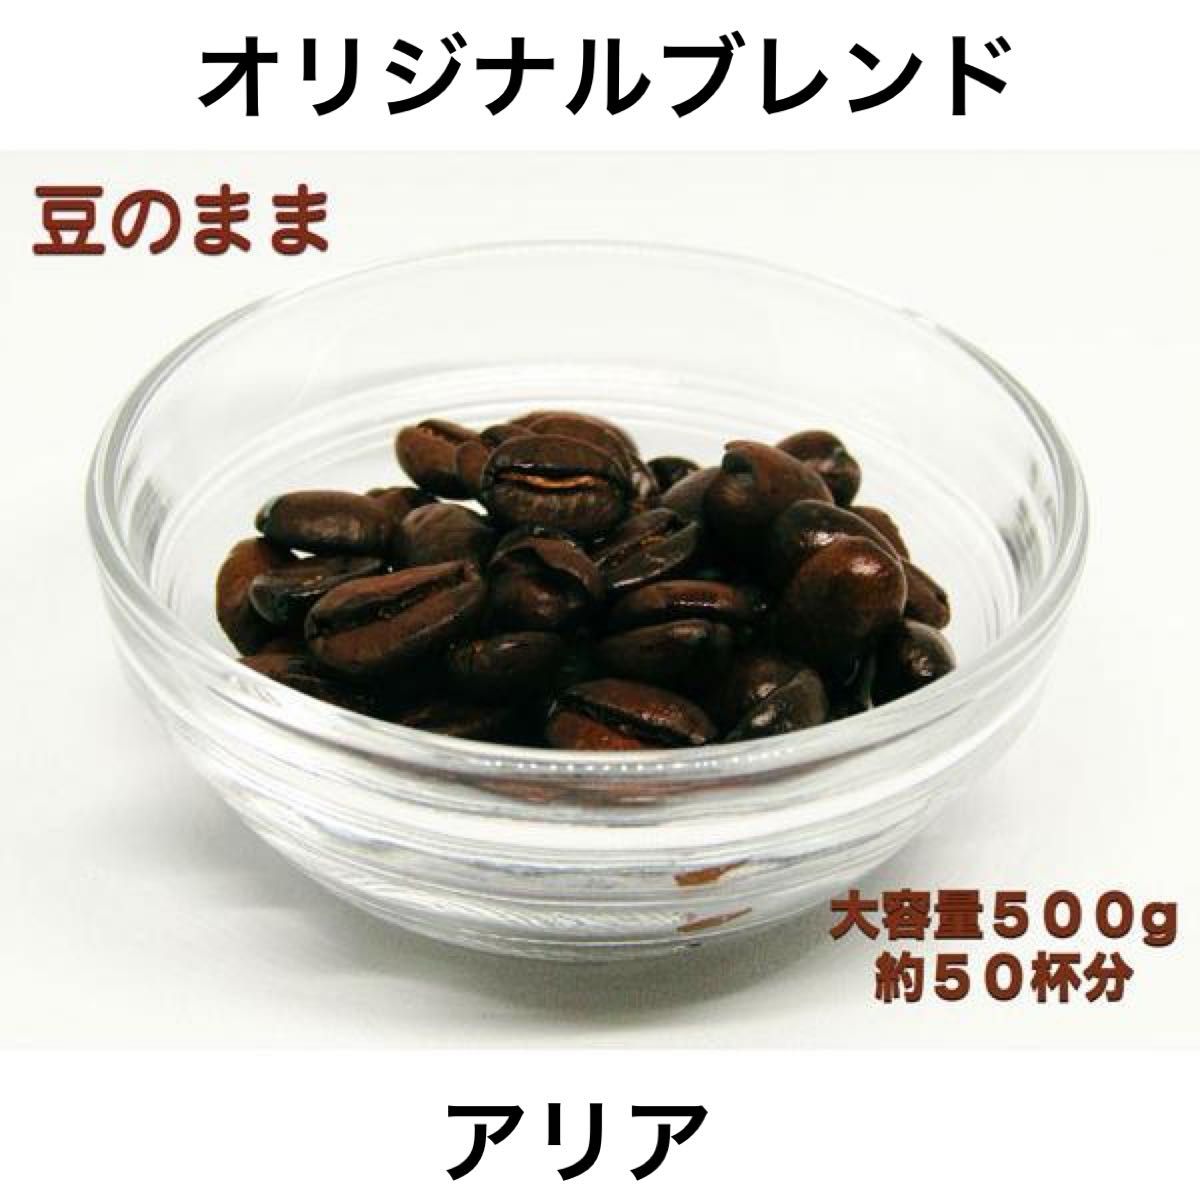 YHR-COFFEE 自家焙煎 オリジナルブレンド アリア 500g 豆のまま発送